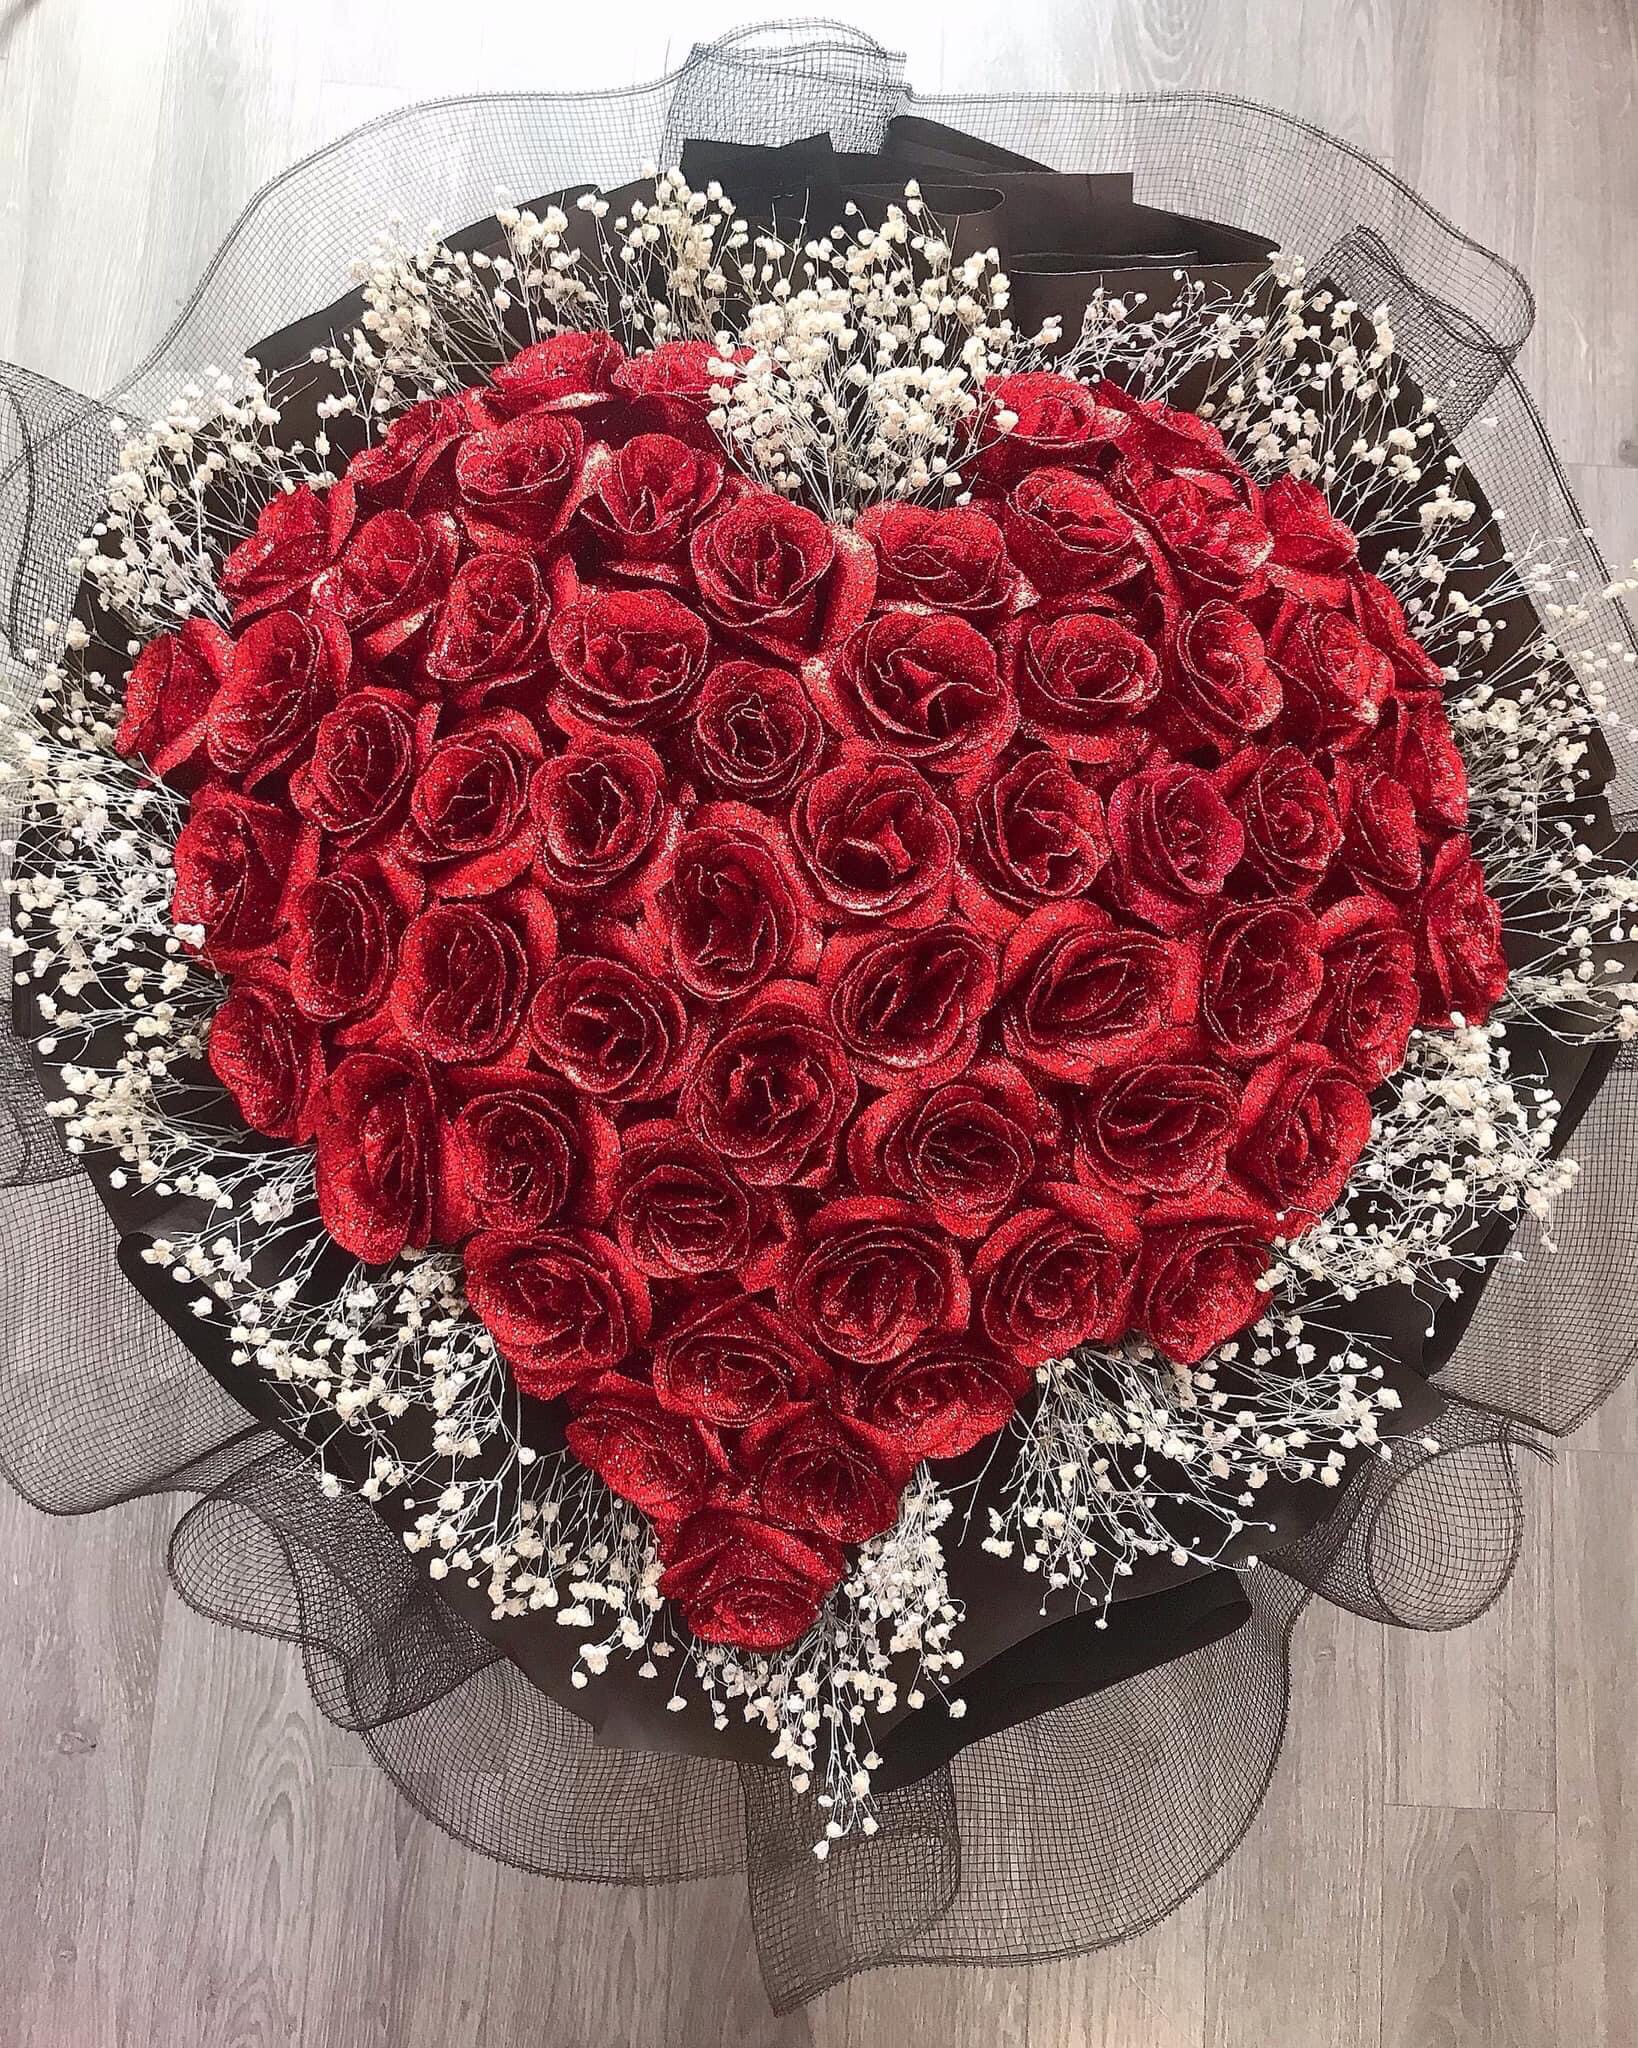 Bó hoa hồng đỏ hình trái tim 50 bông – Tình yêu muôn thuở